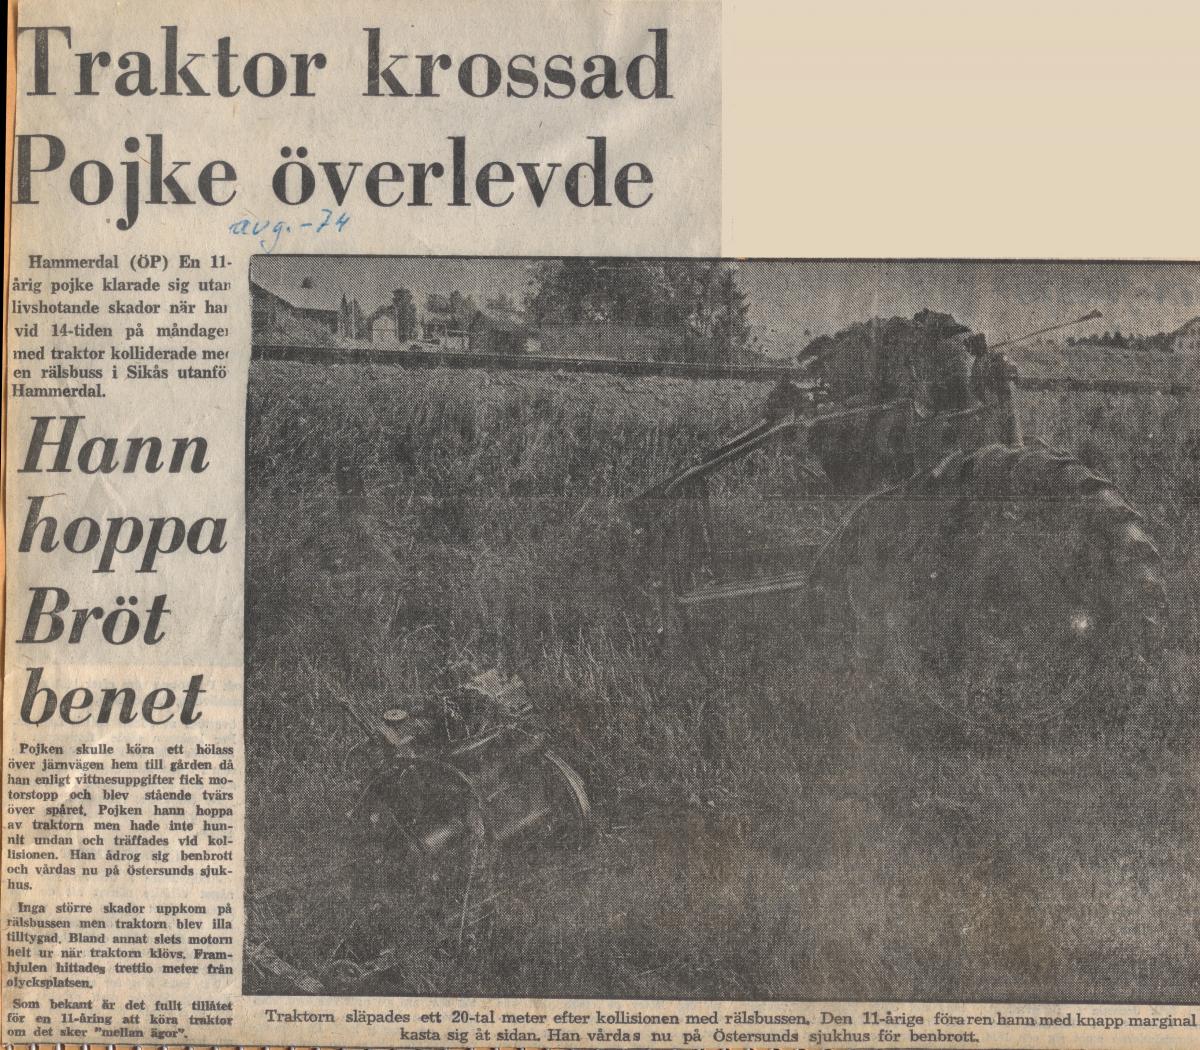 1974 traktorolycka